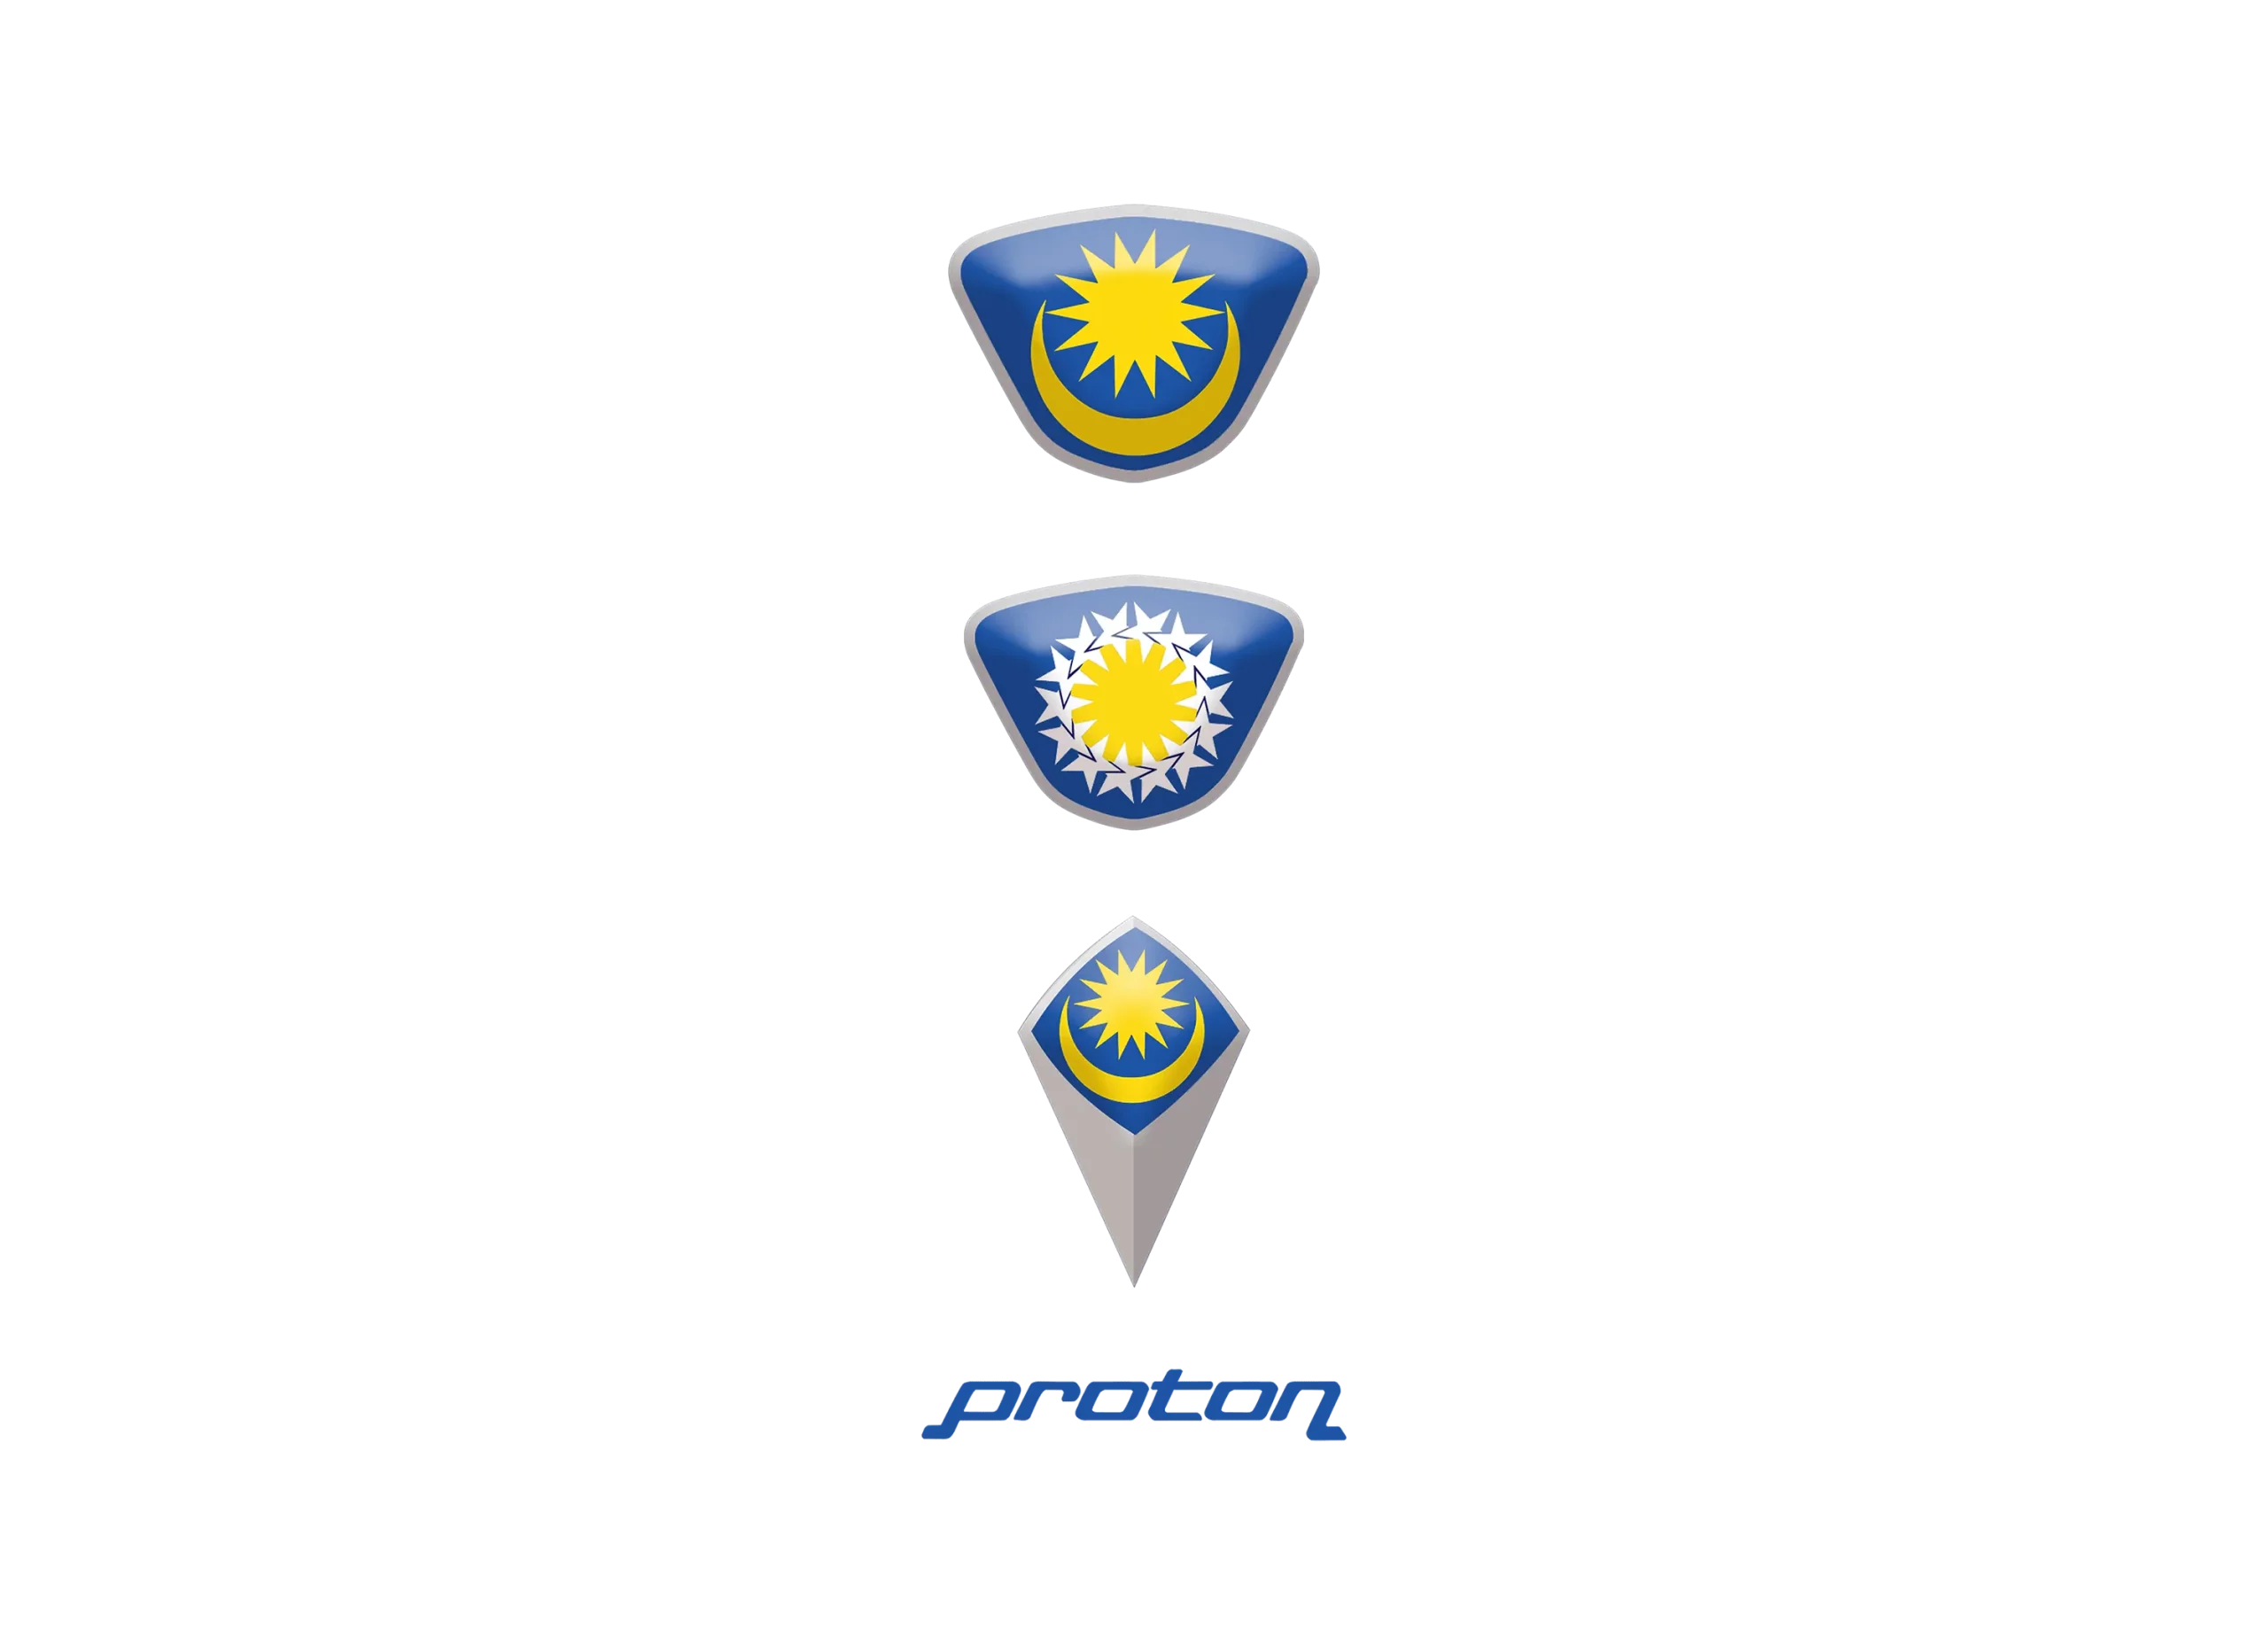 Proton logo 1992-2000